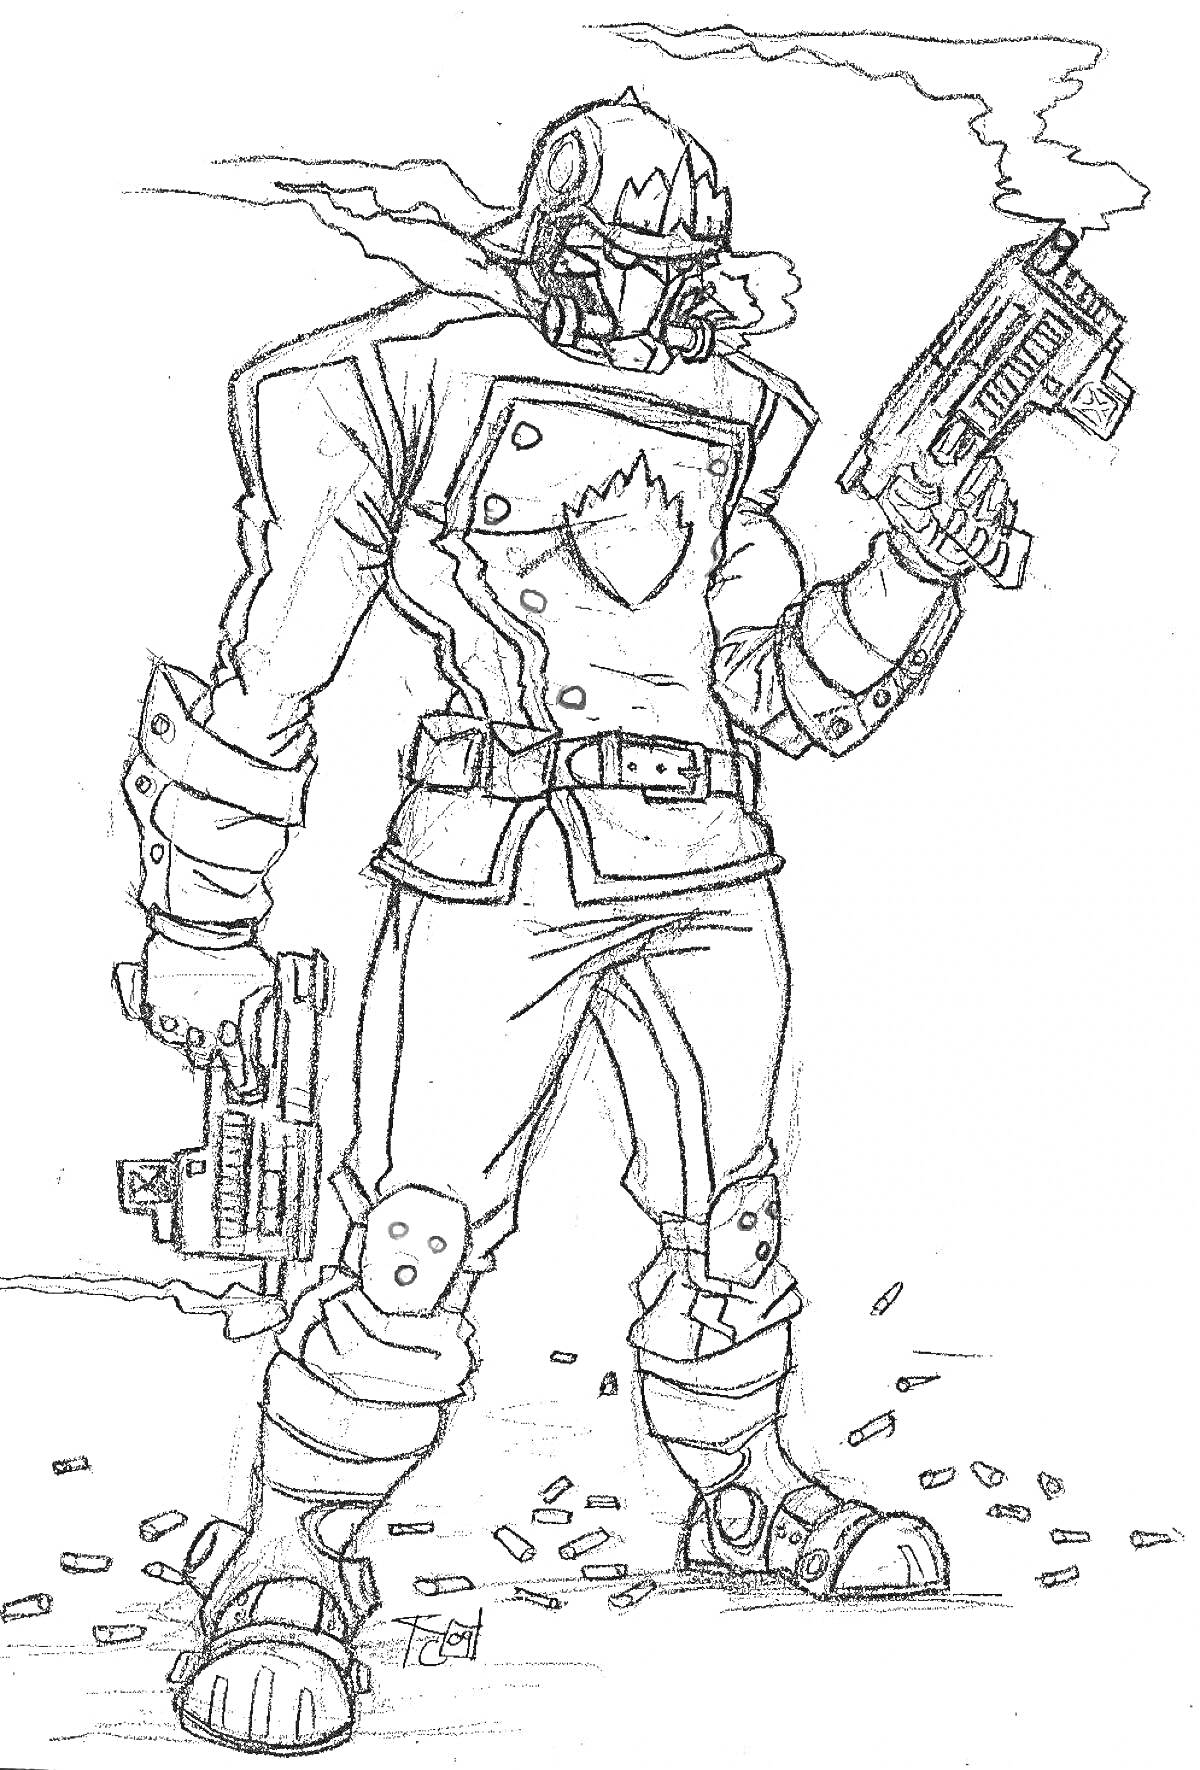 Человек в бронежилете с двумя пистолетами и шлемом, стоящий среди гильз